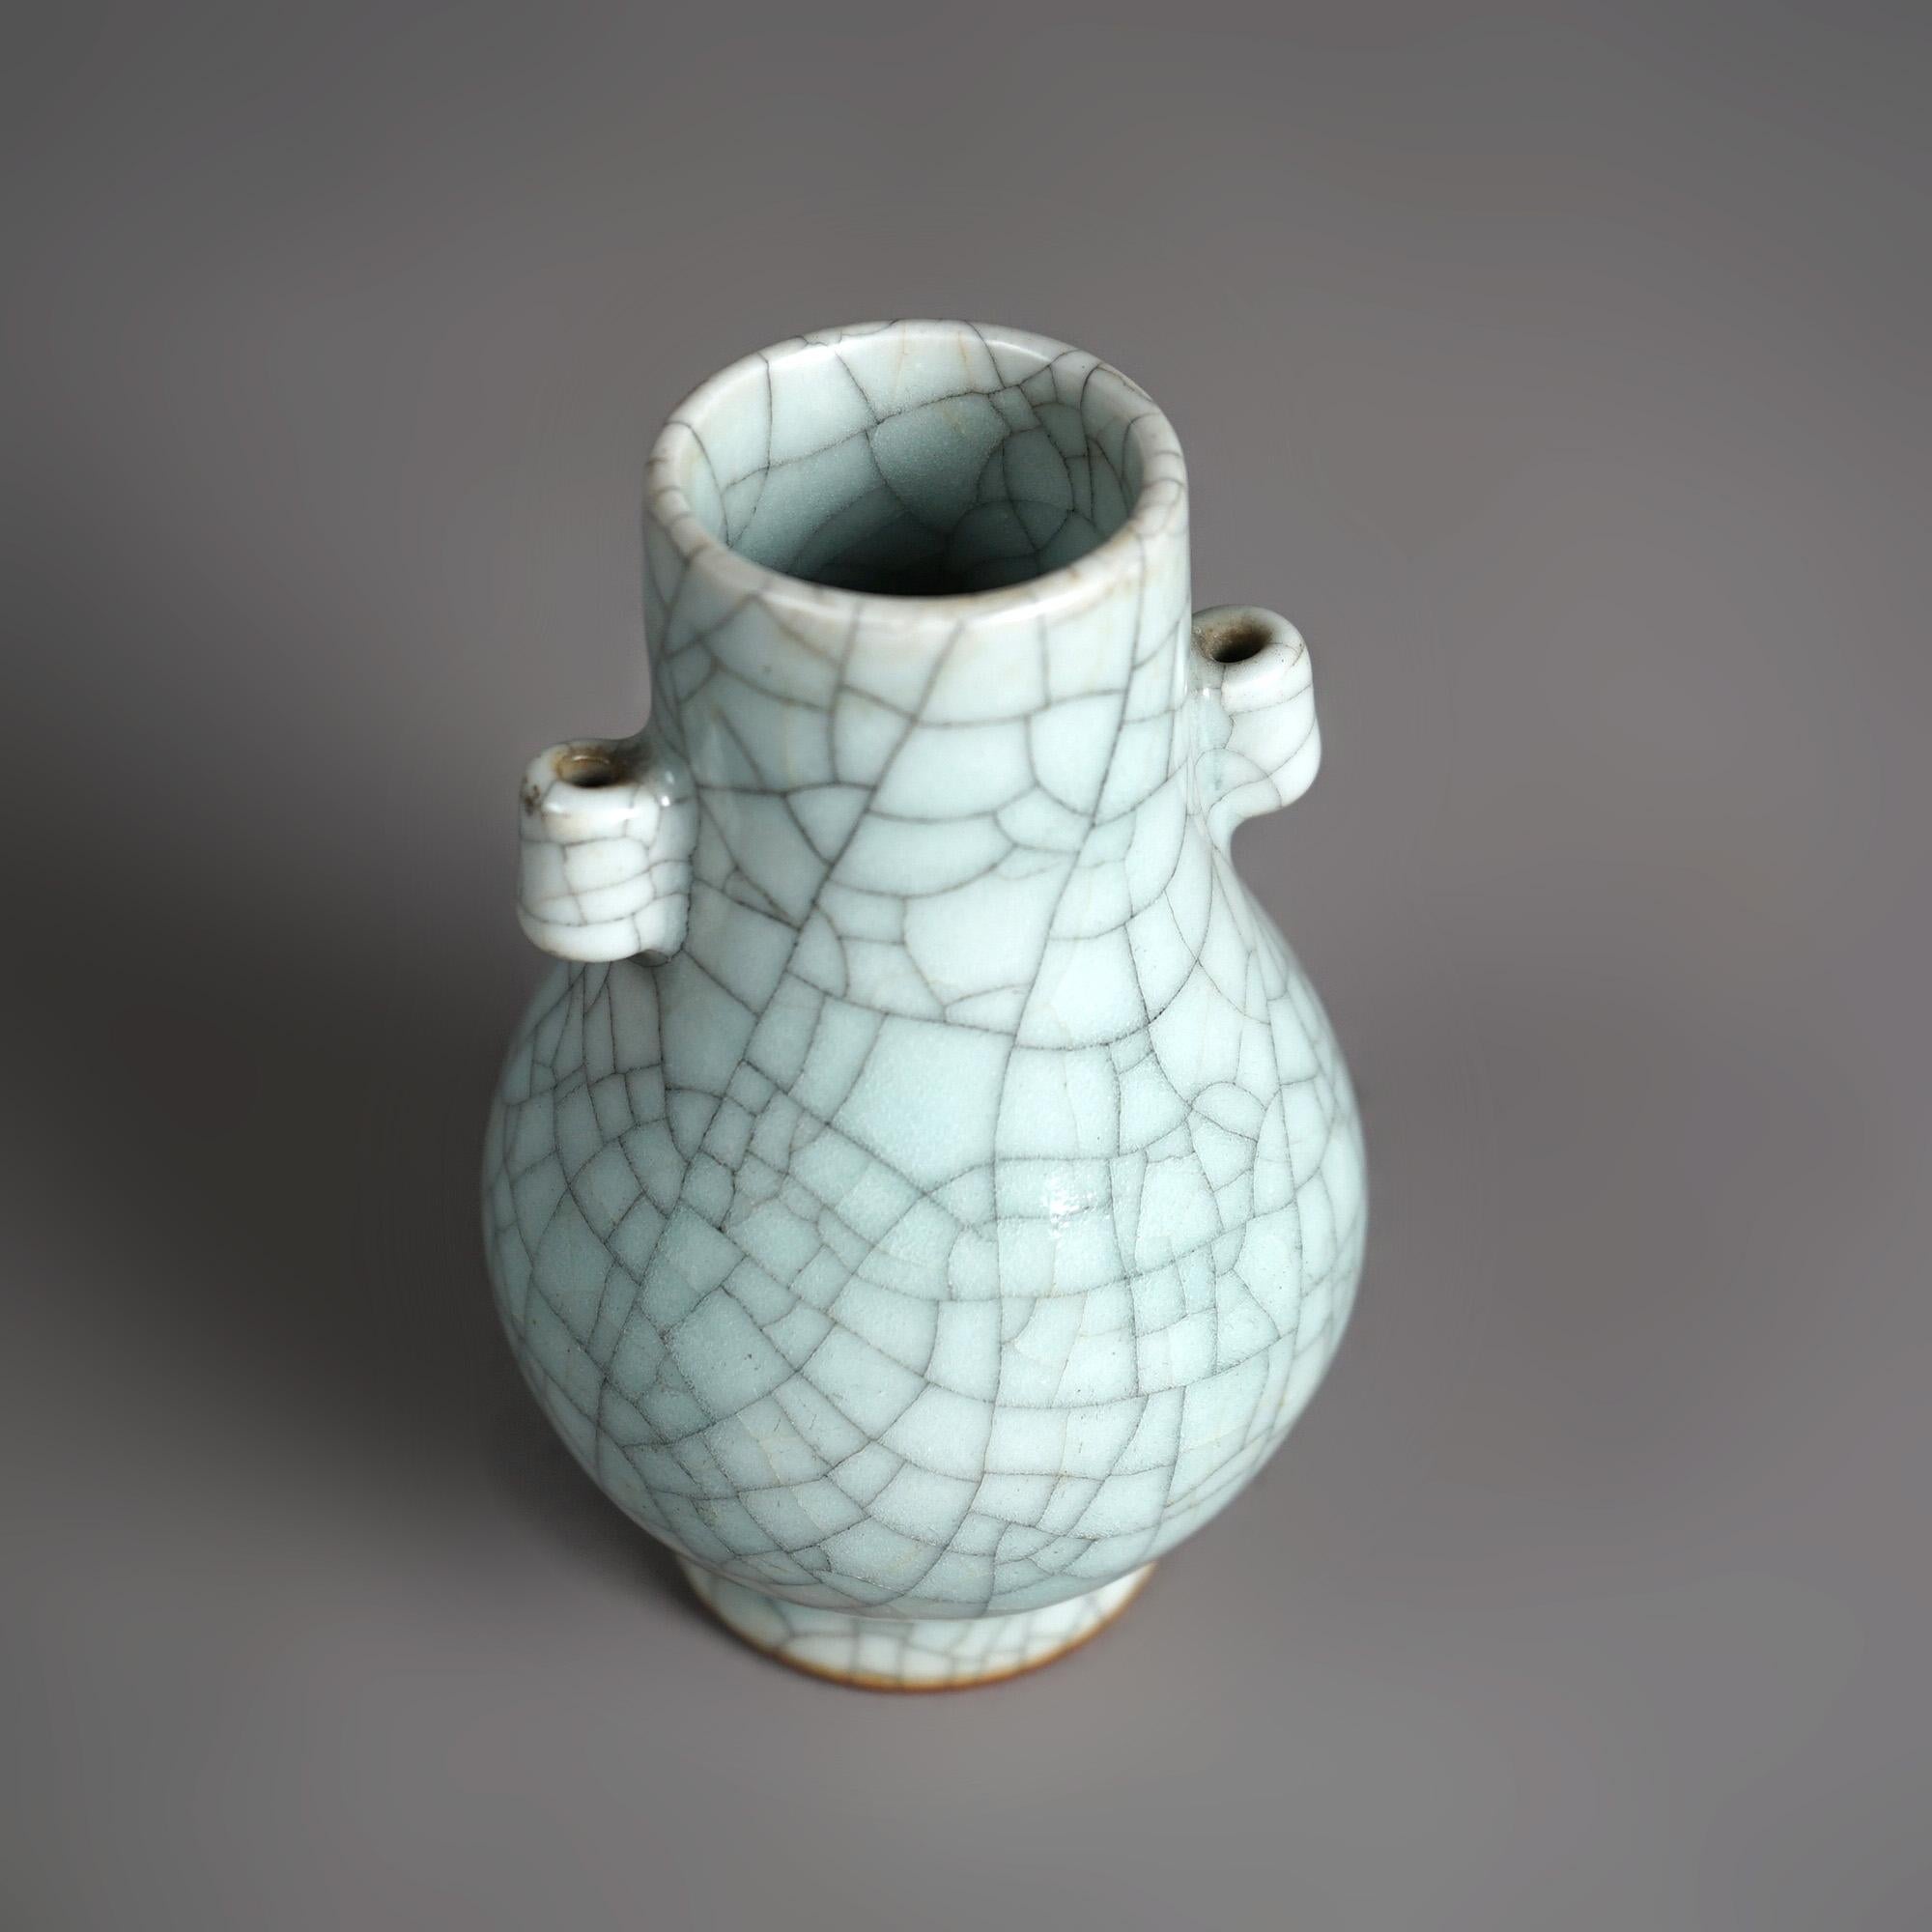 Antique Chinese Crackle Glaze Pottery Vase C1930 1